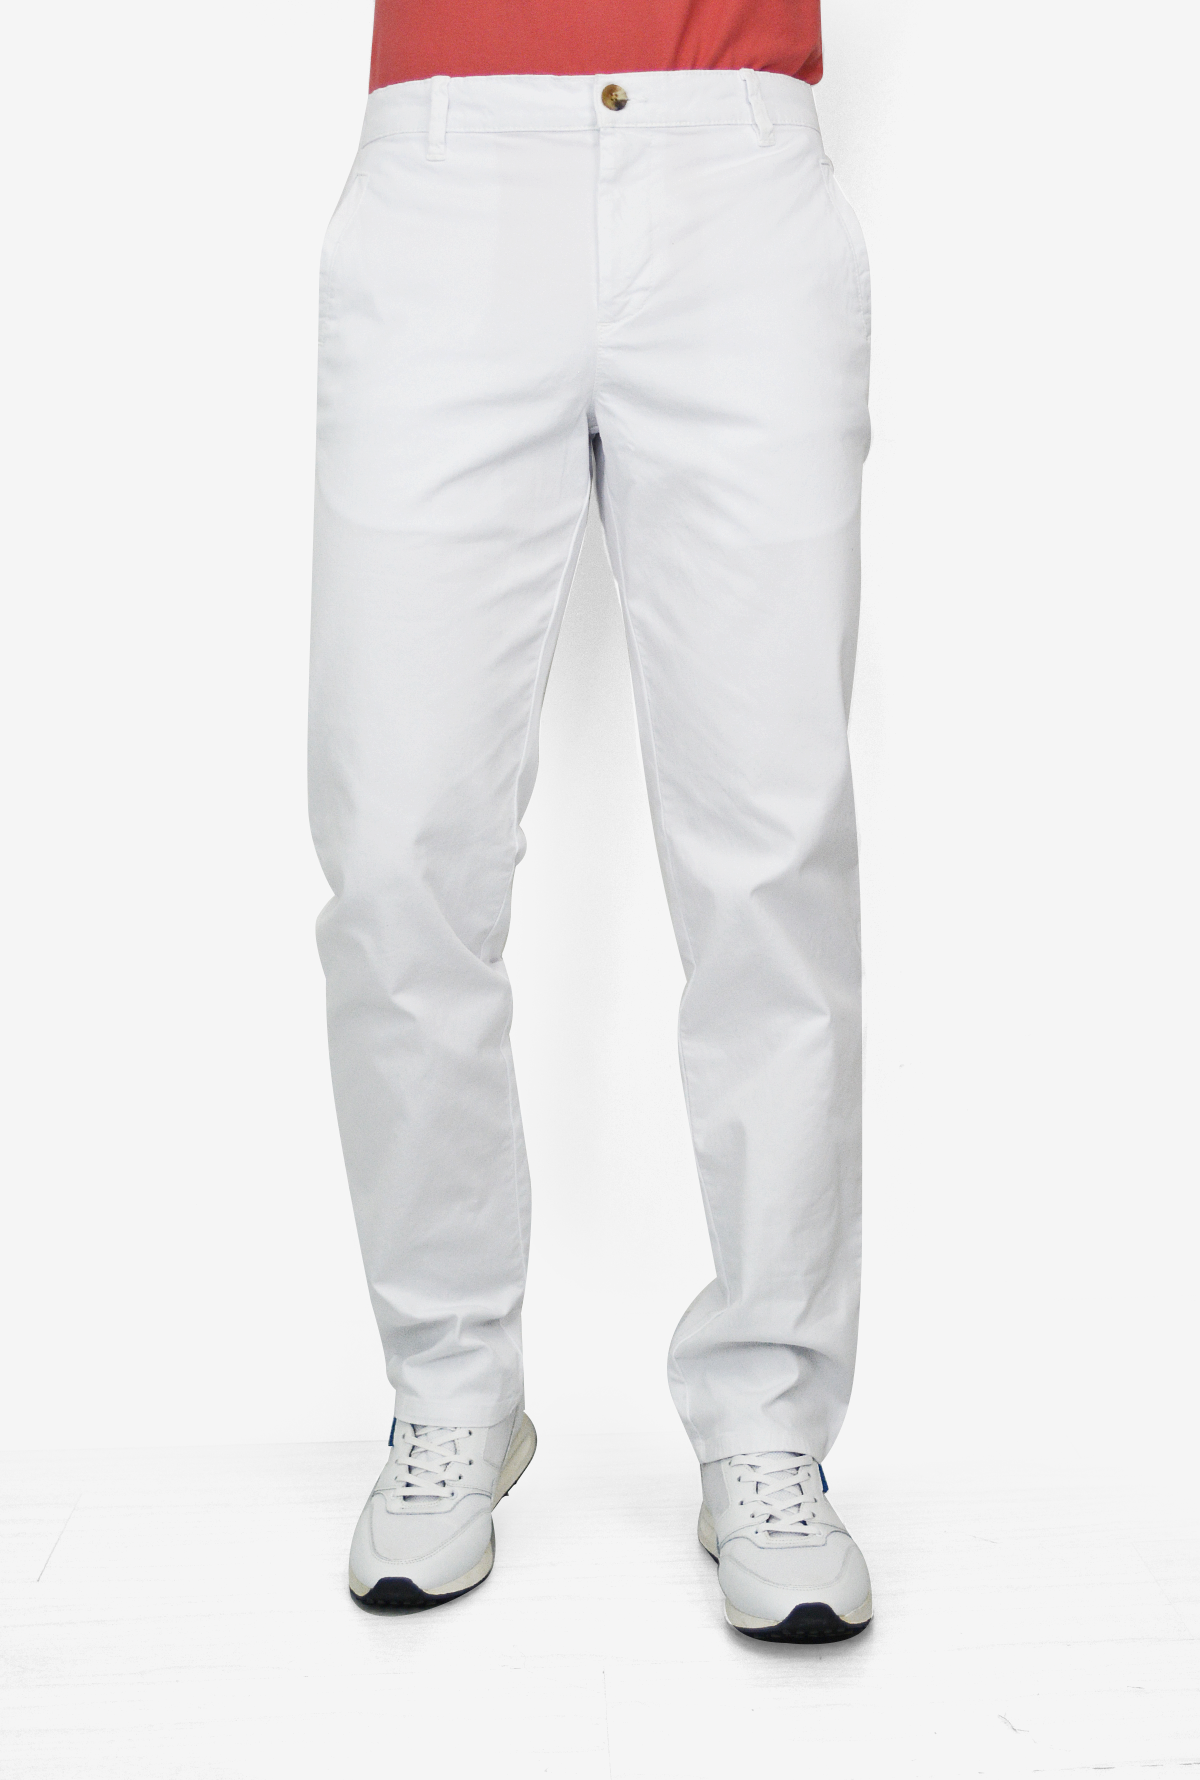 Pantalón Blanco Para Hombre DPC1029